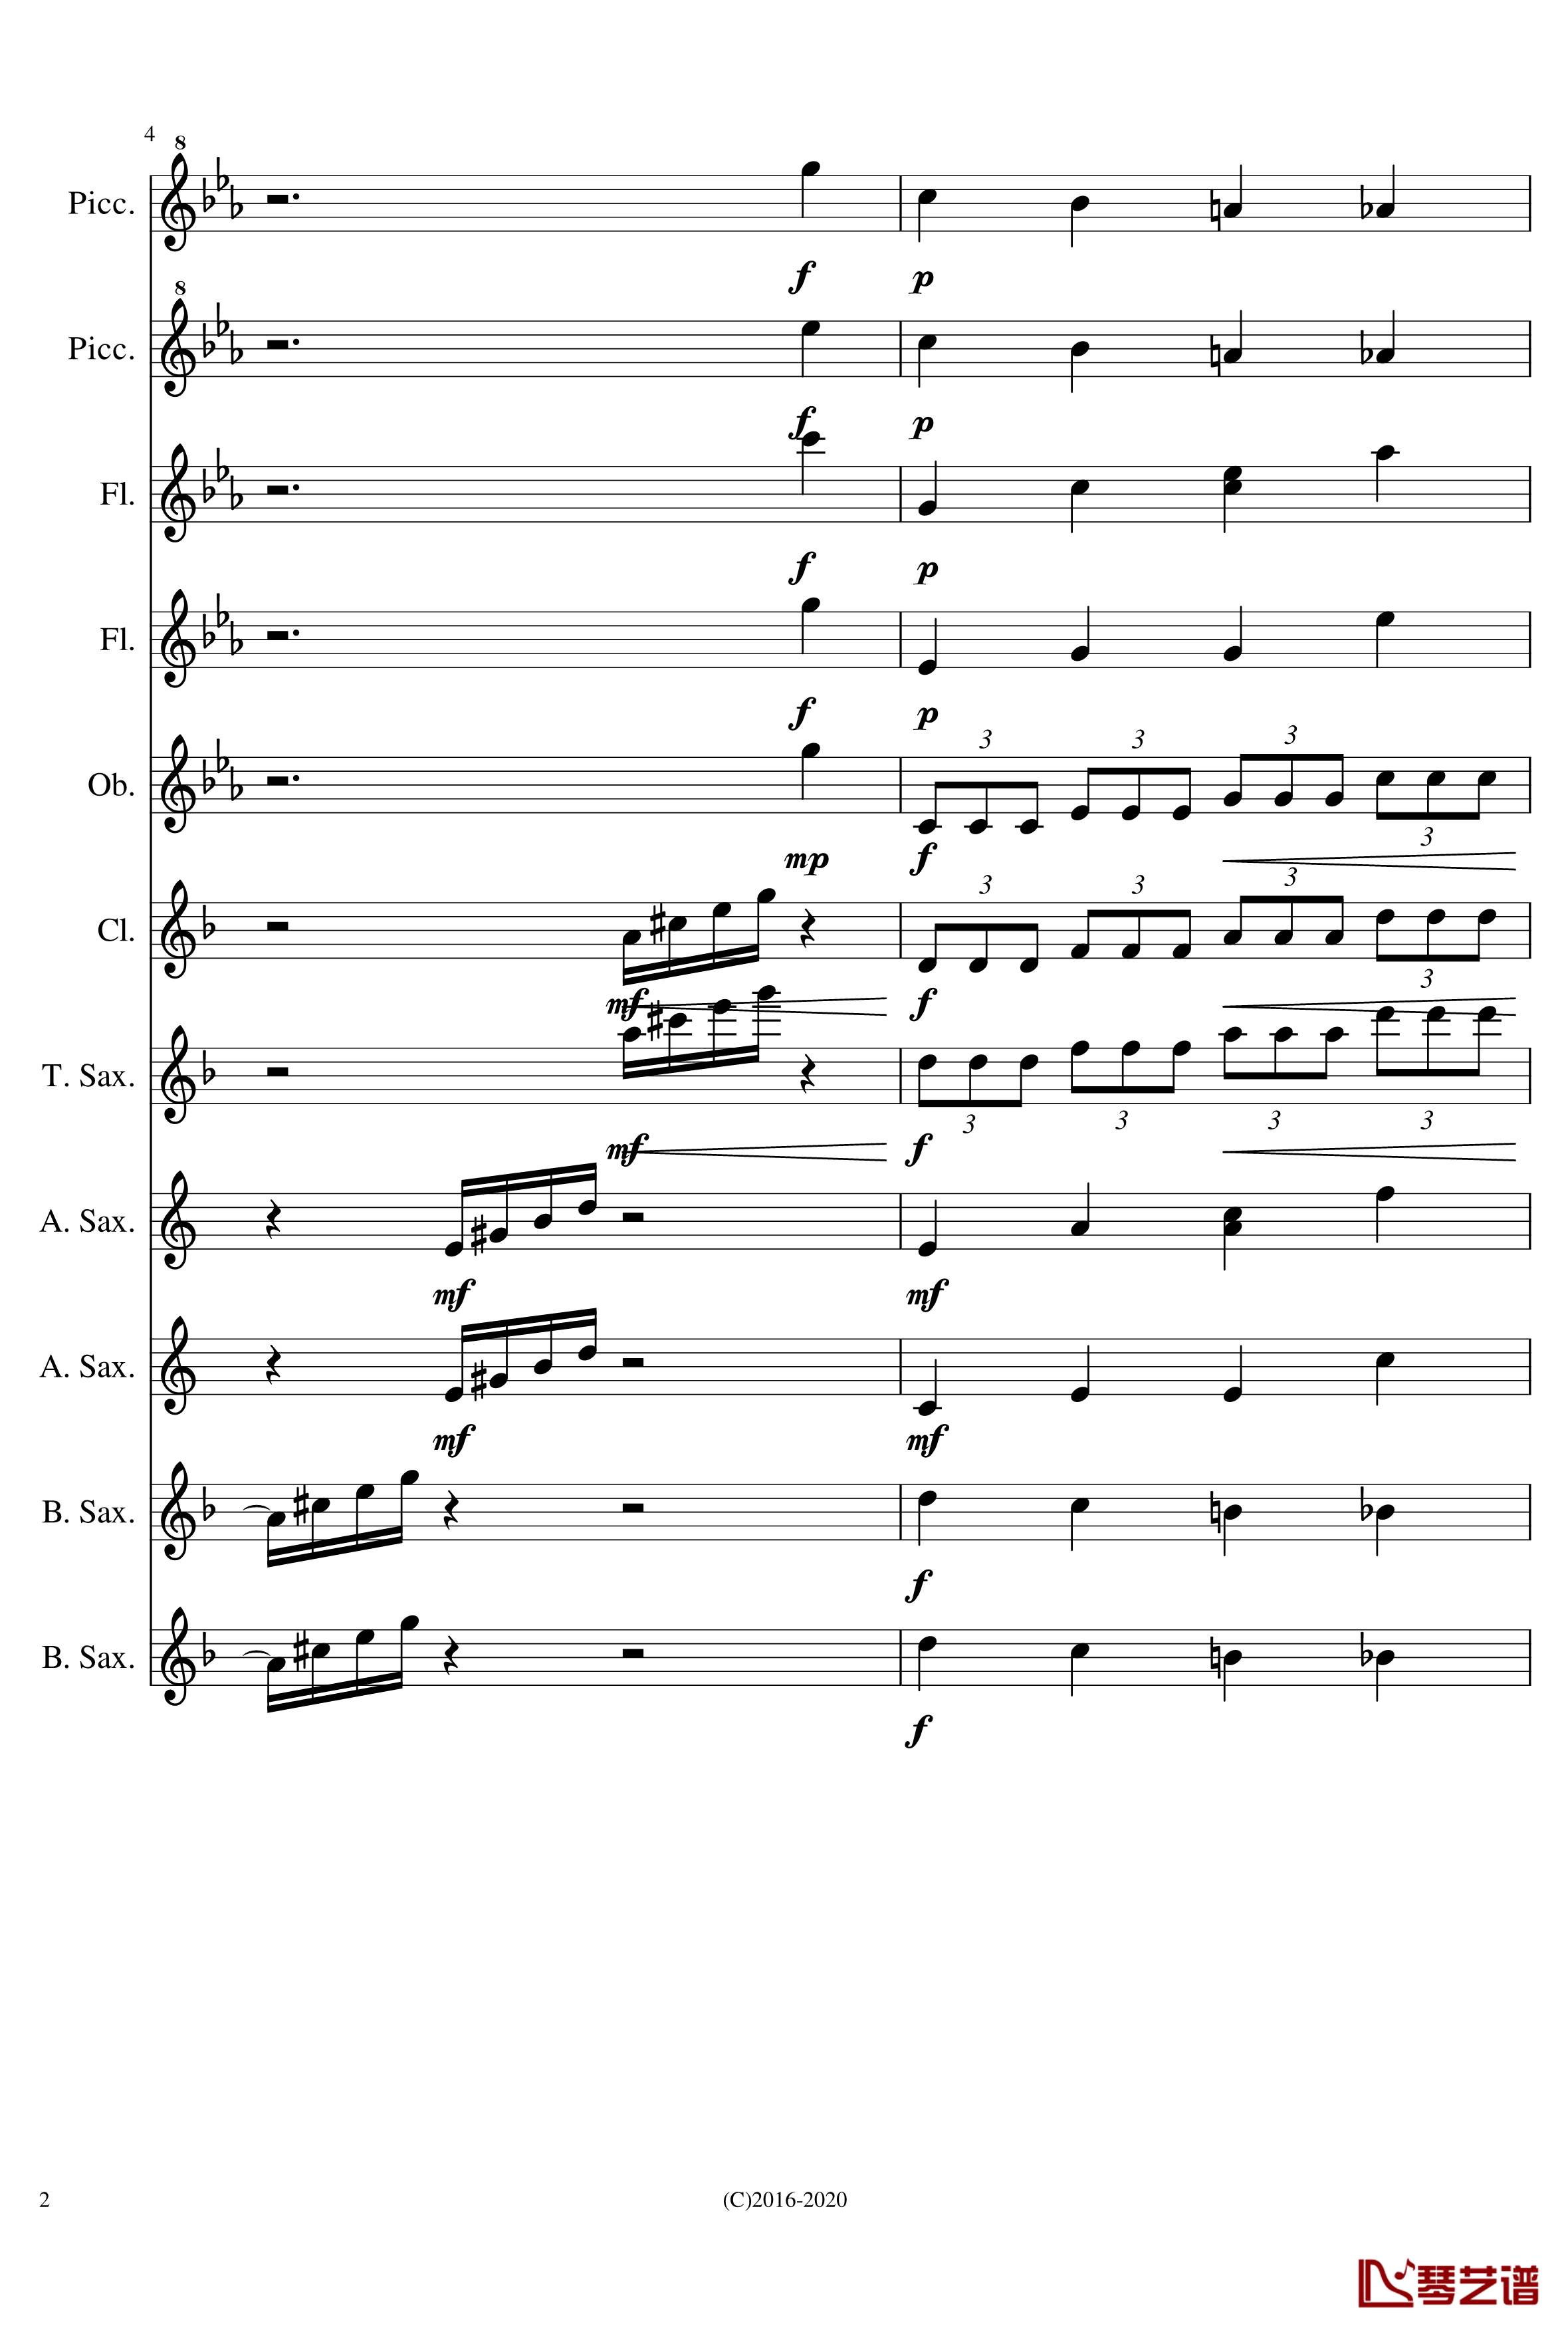 黑色星期天钢琴谱-木管合奏-NecroDavid2